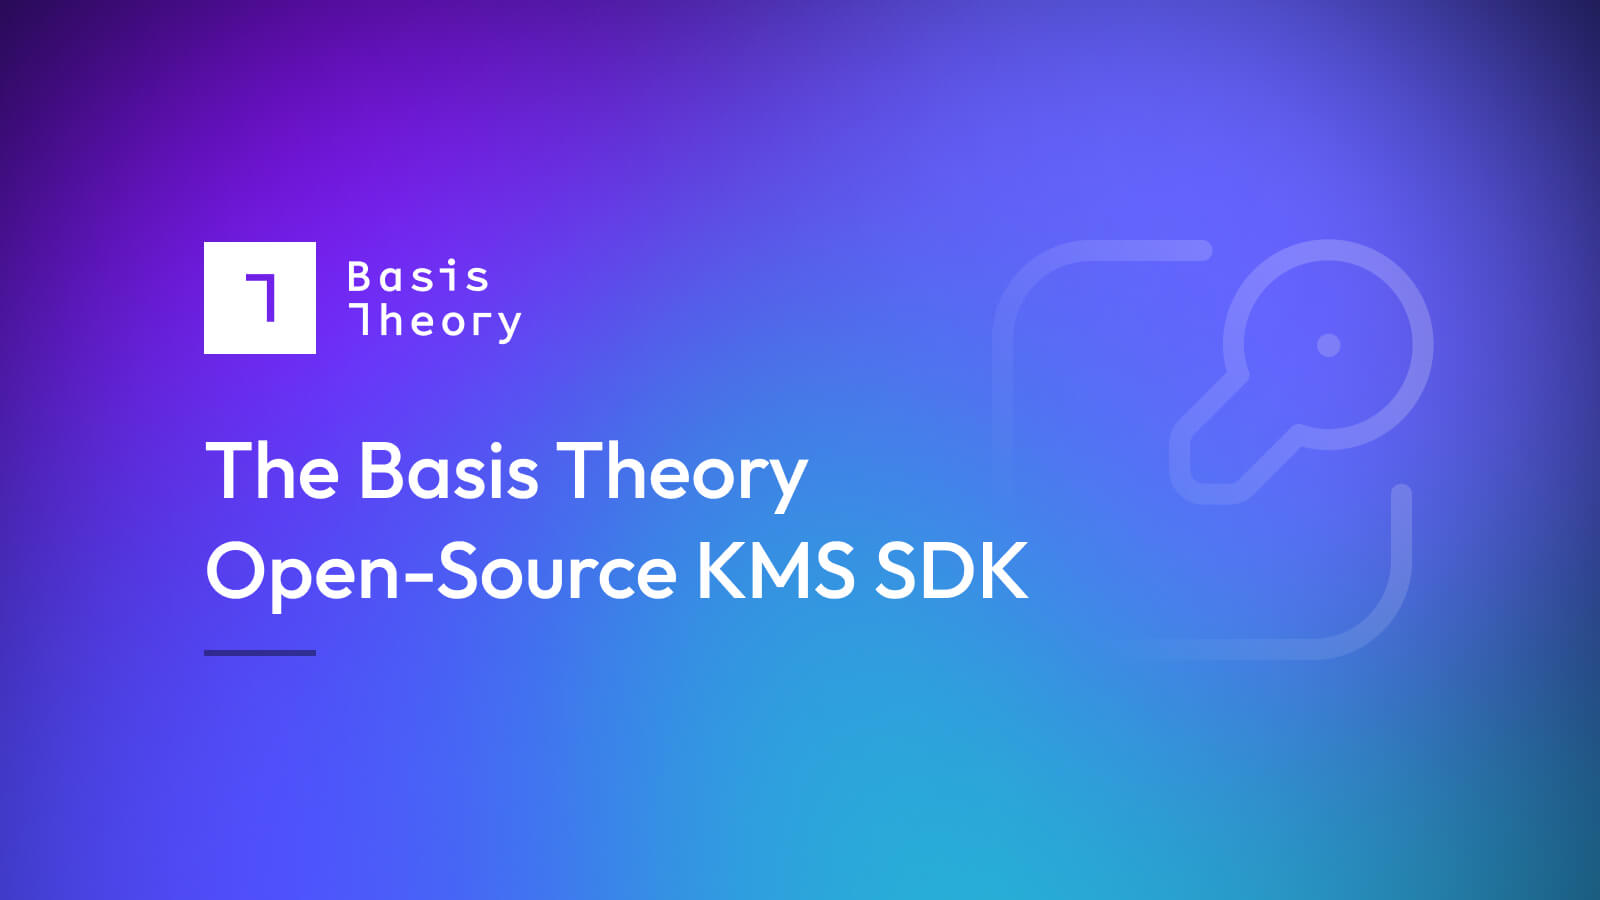 Open-source KMS SDK